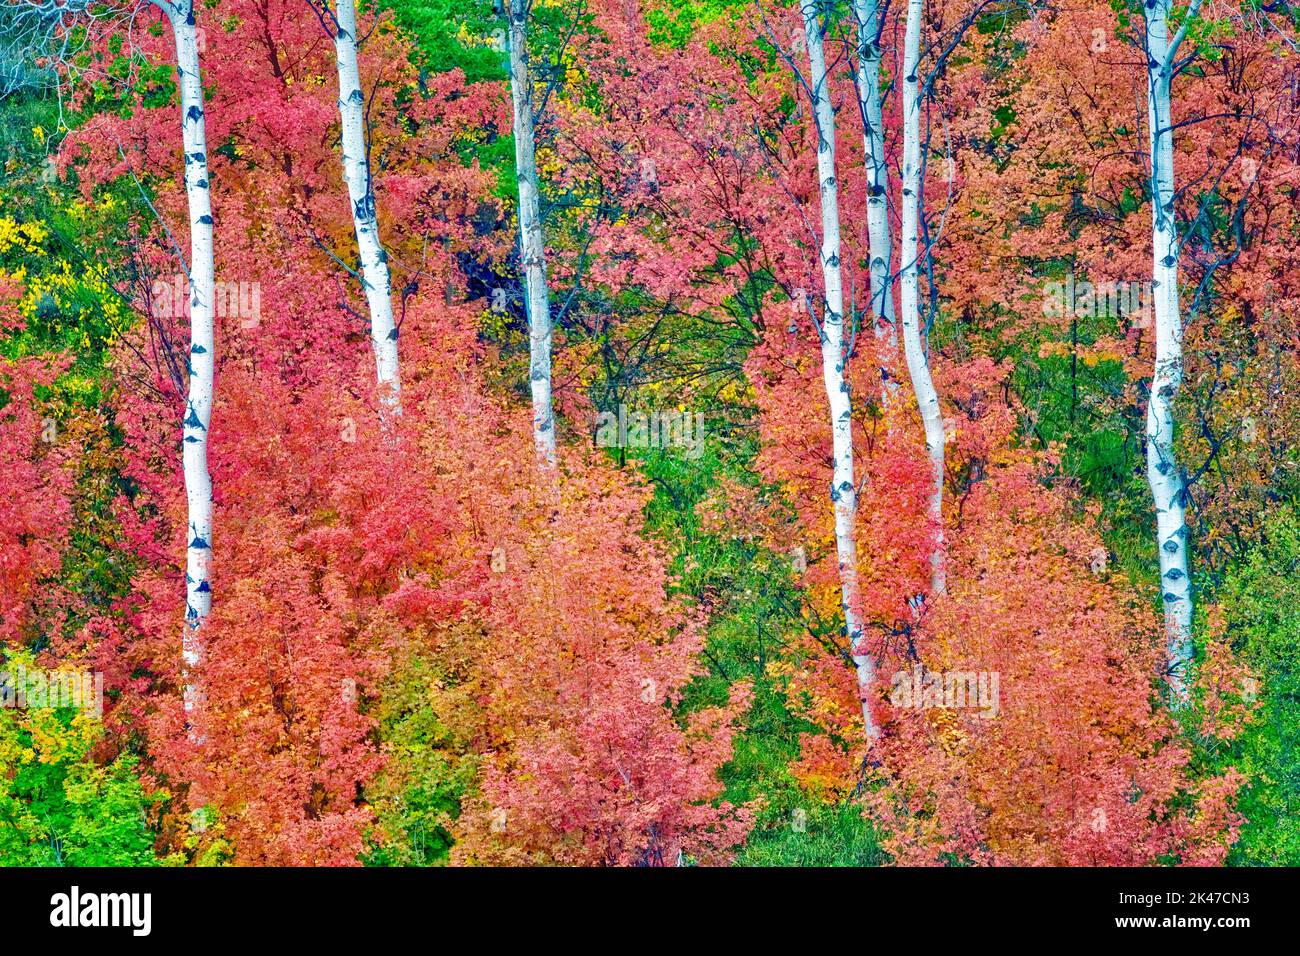 Variétés mixtes des érables avec tremble dans la couleur de l'automne. Targhee National Forest, North Carolina Banque D'Images